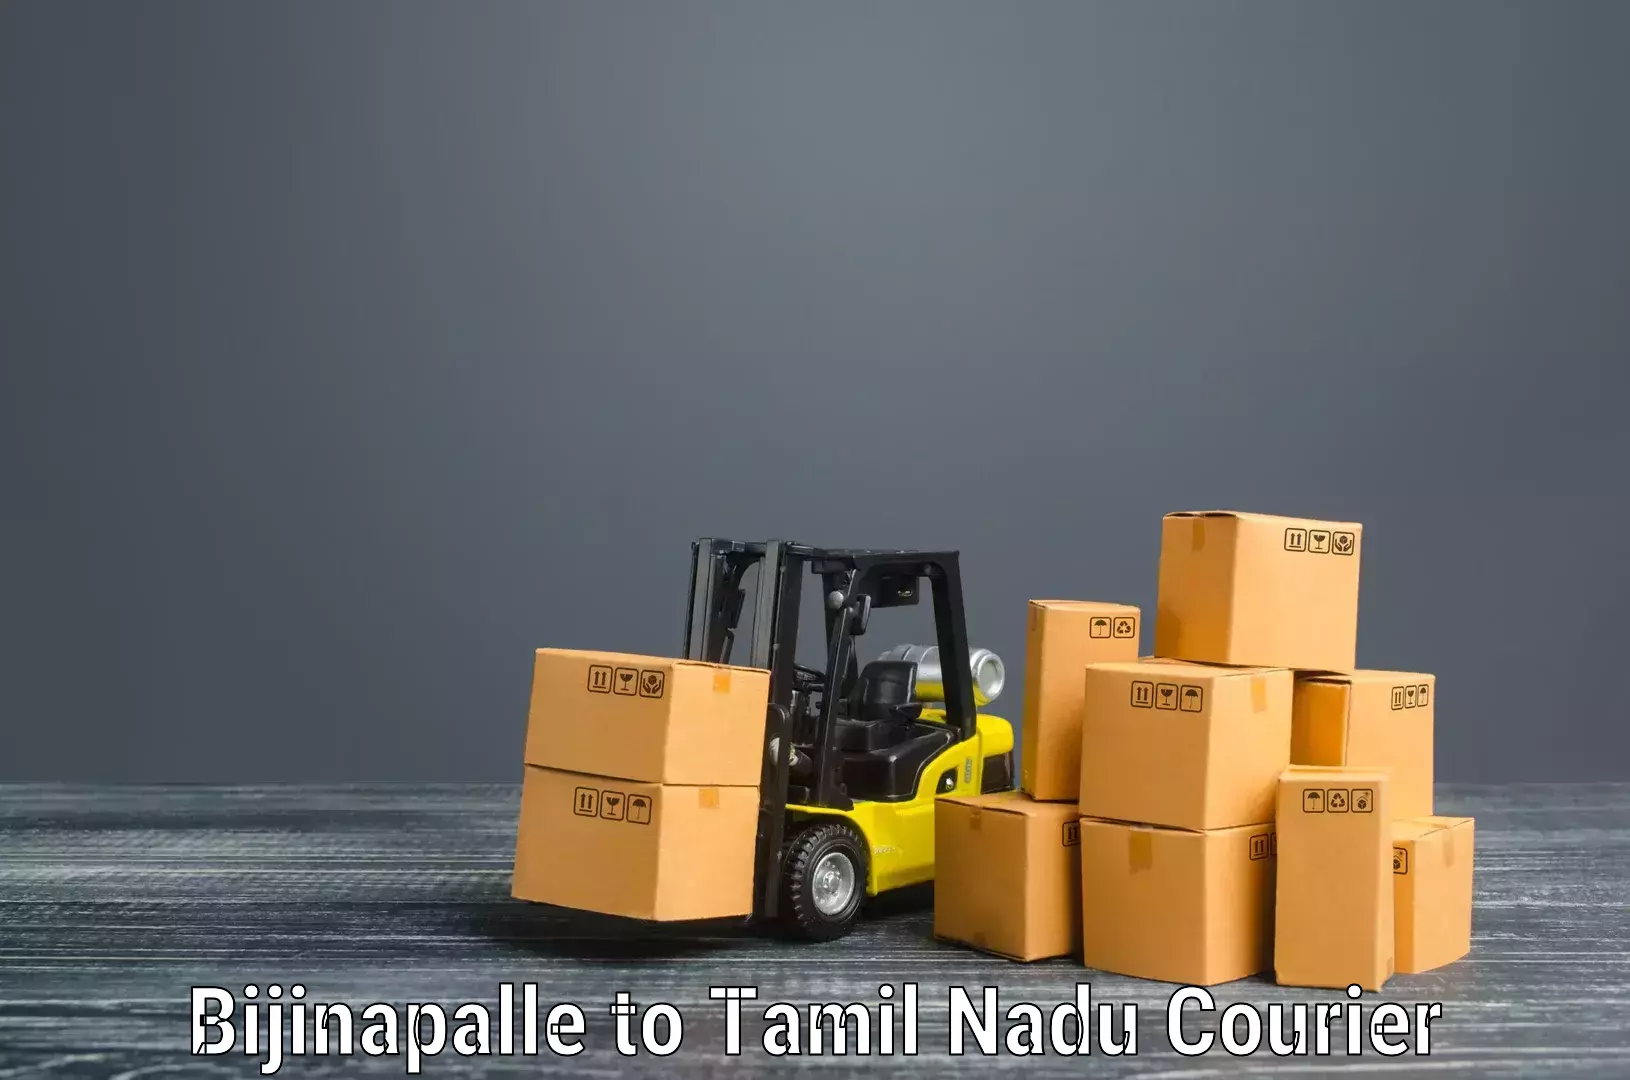 Furniture transport service Bijinapalle to Tiruchirappalli